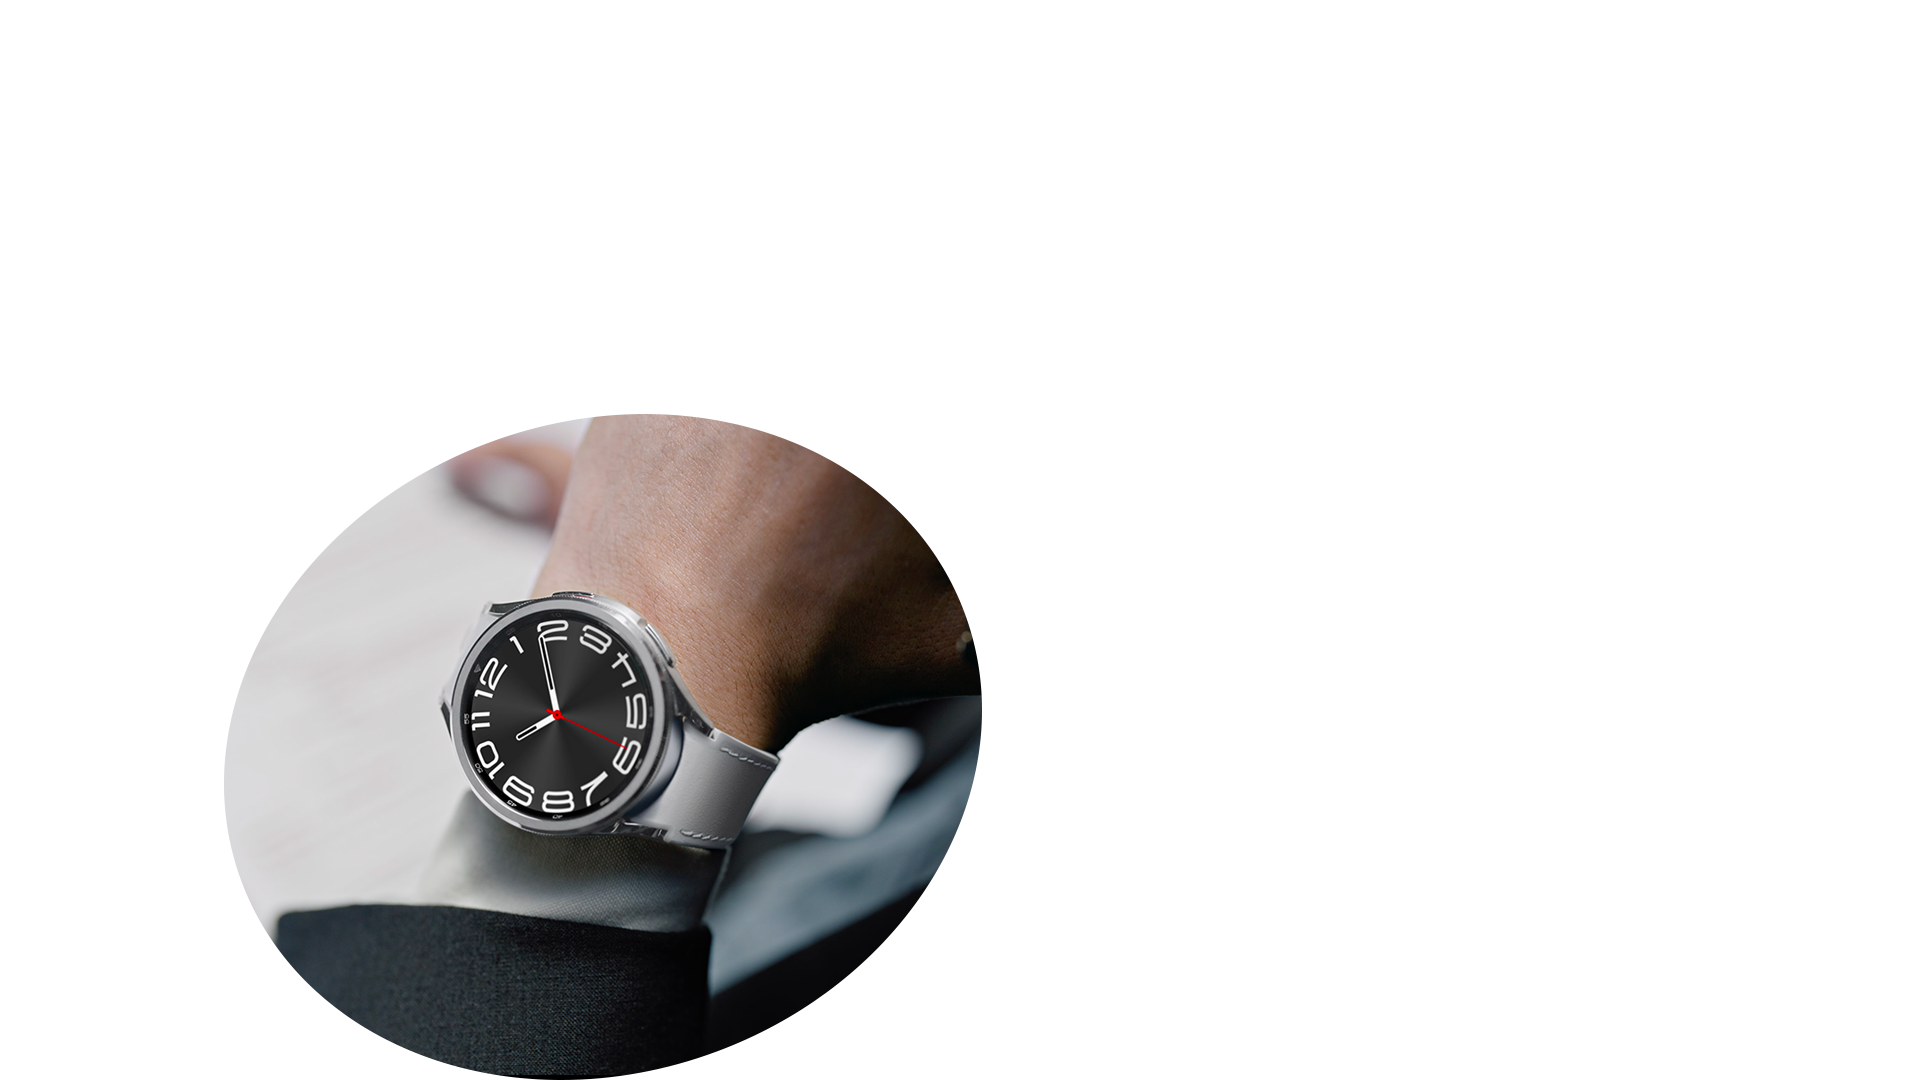 실버 스트랩의 갤럭시 워치6 클래식을 착용한 남성과 패브릭 스트랩의  워치6를 착용한 남성의 일상 컷과 시계 클로즈업 이미지입니다.
